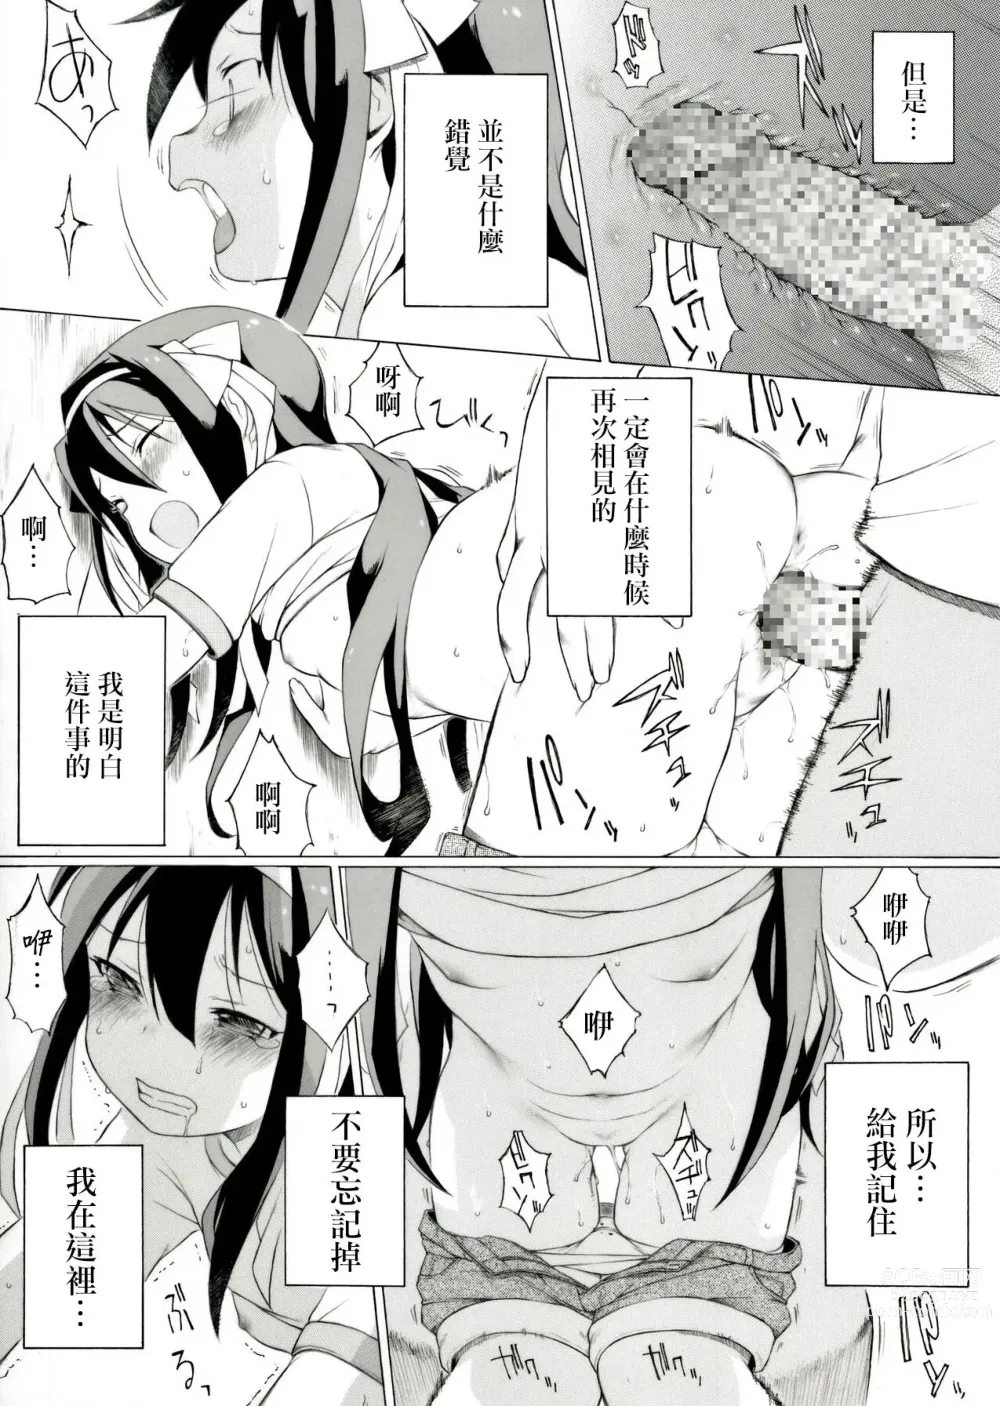 Page 5 of doujinshi Tanabata no Yoru ni Jitsu wa Konna Koto ga Attarashii desu yo